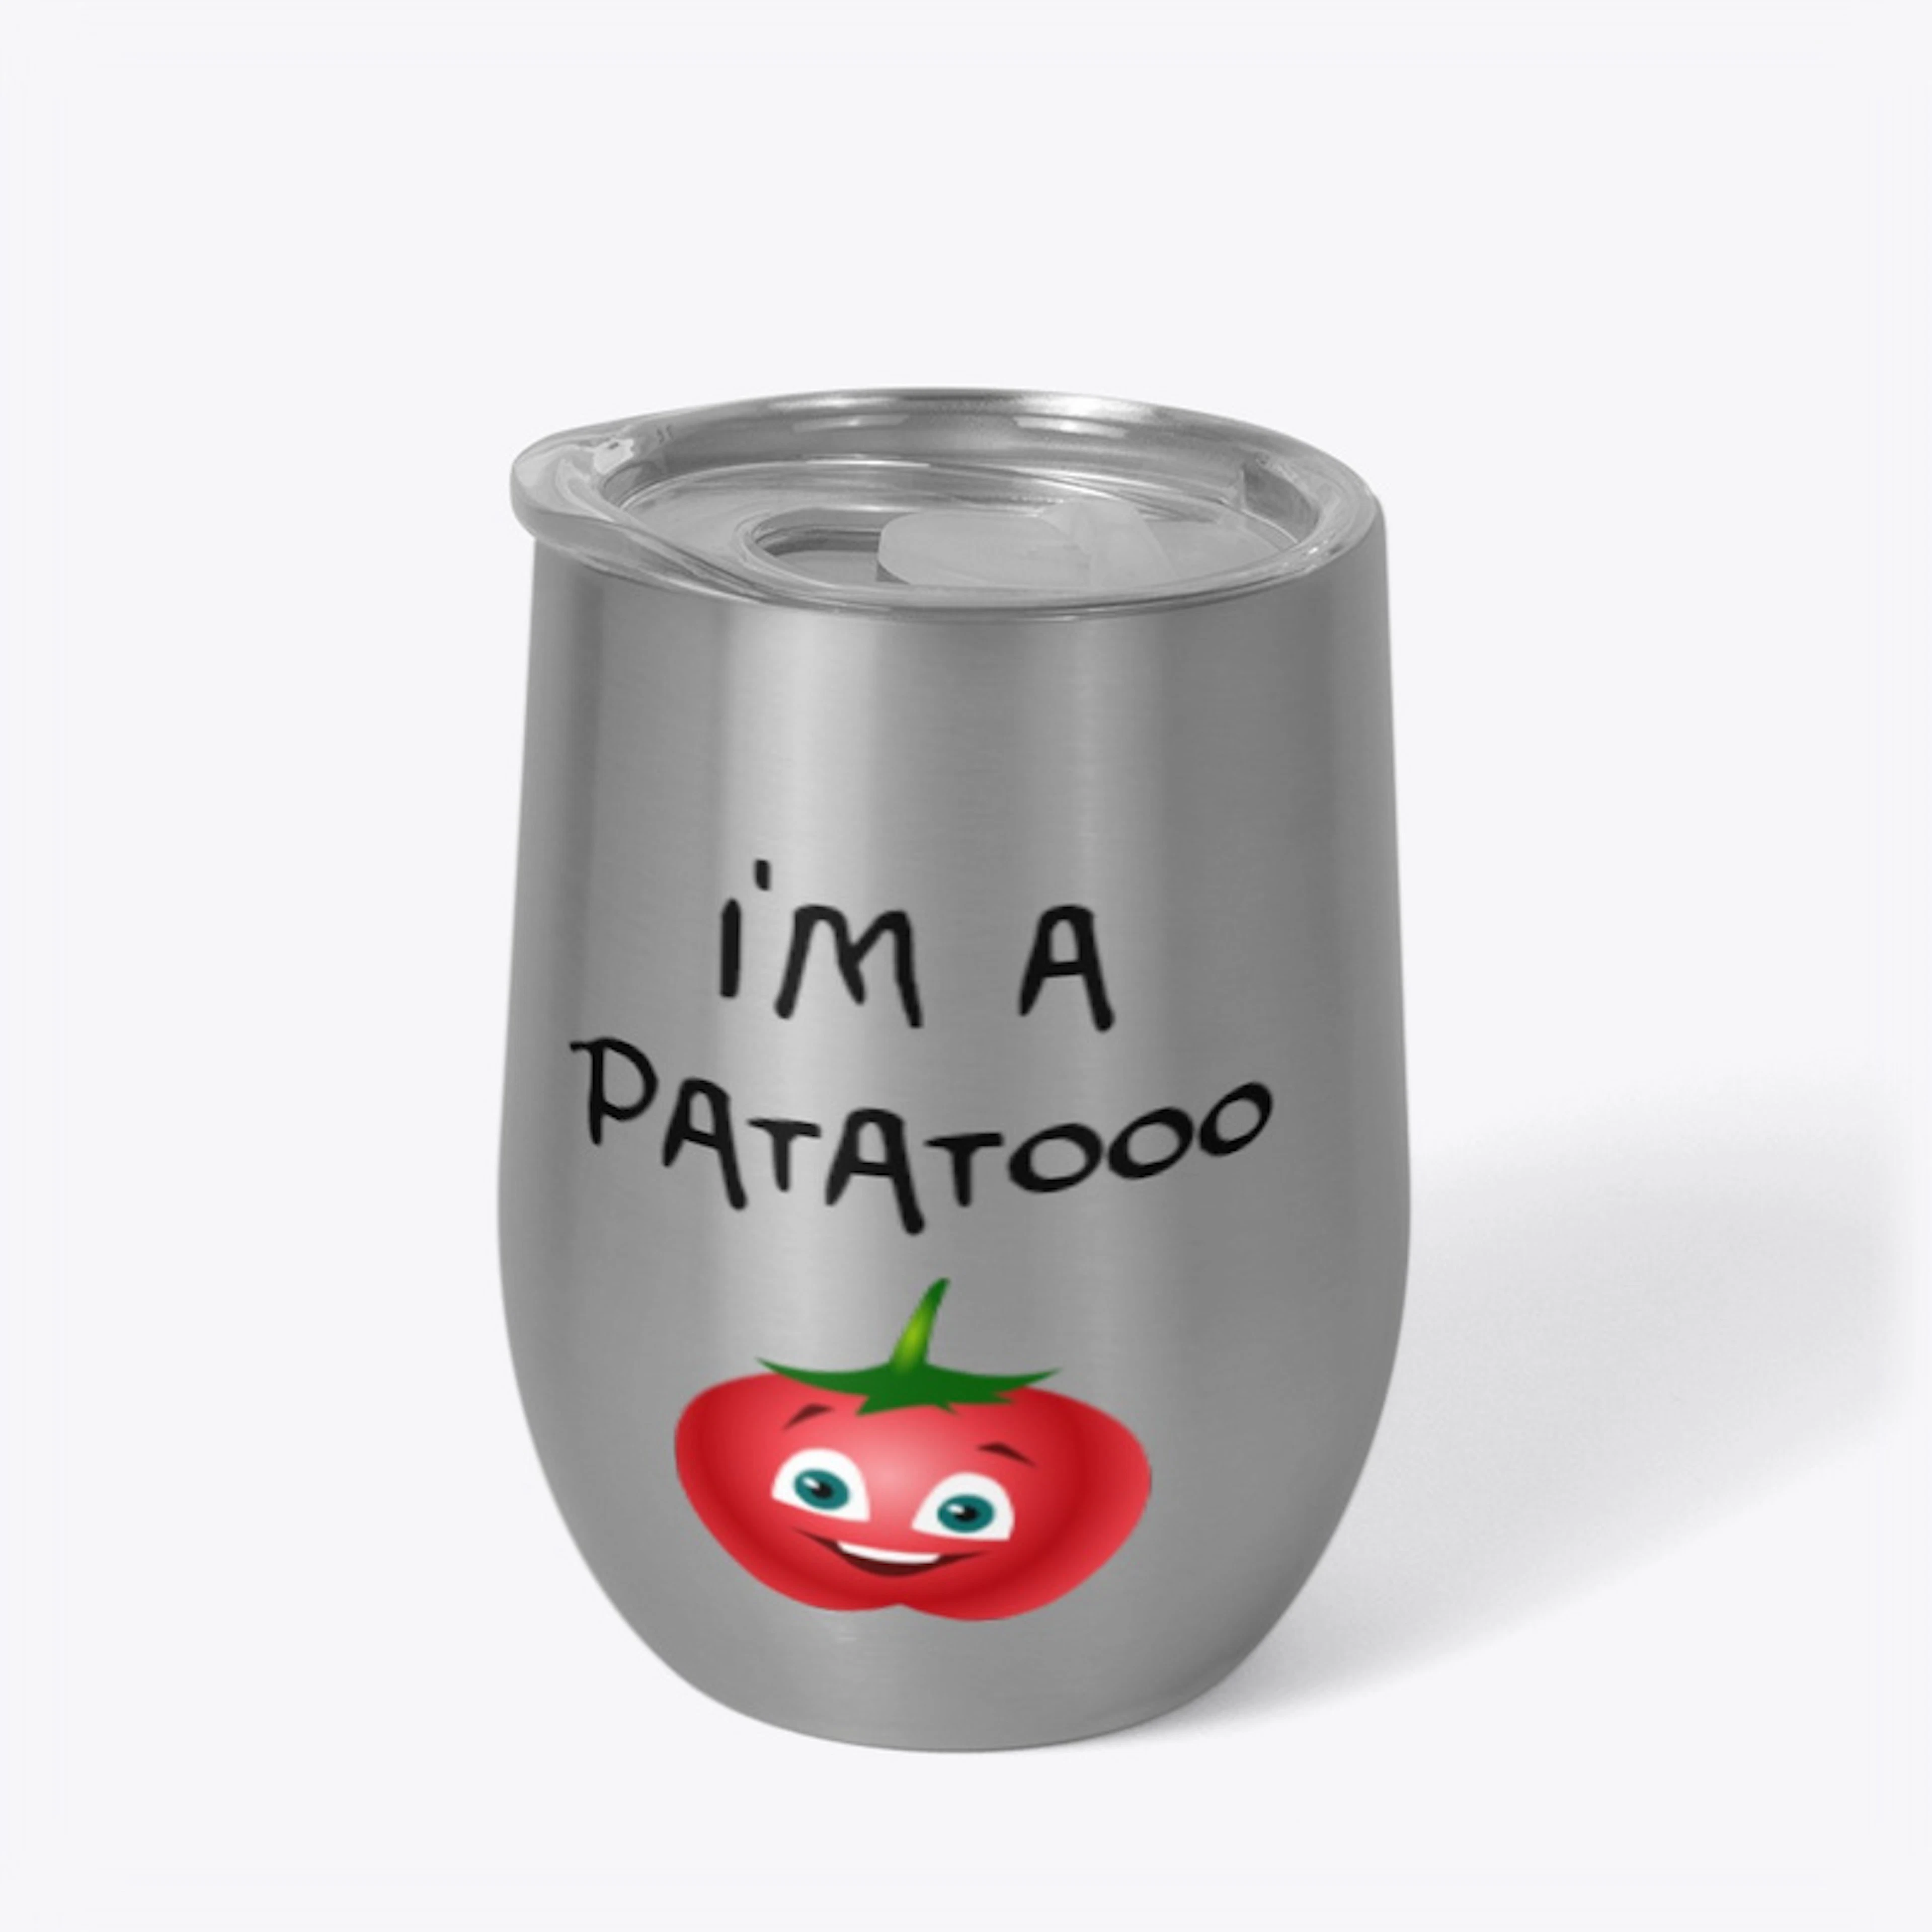 Patatooo